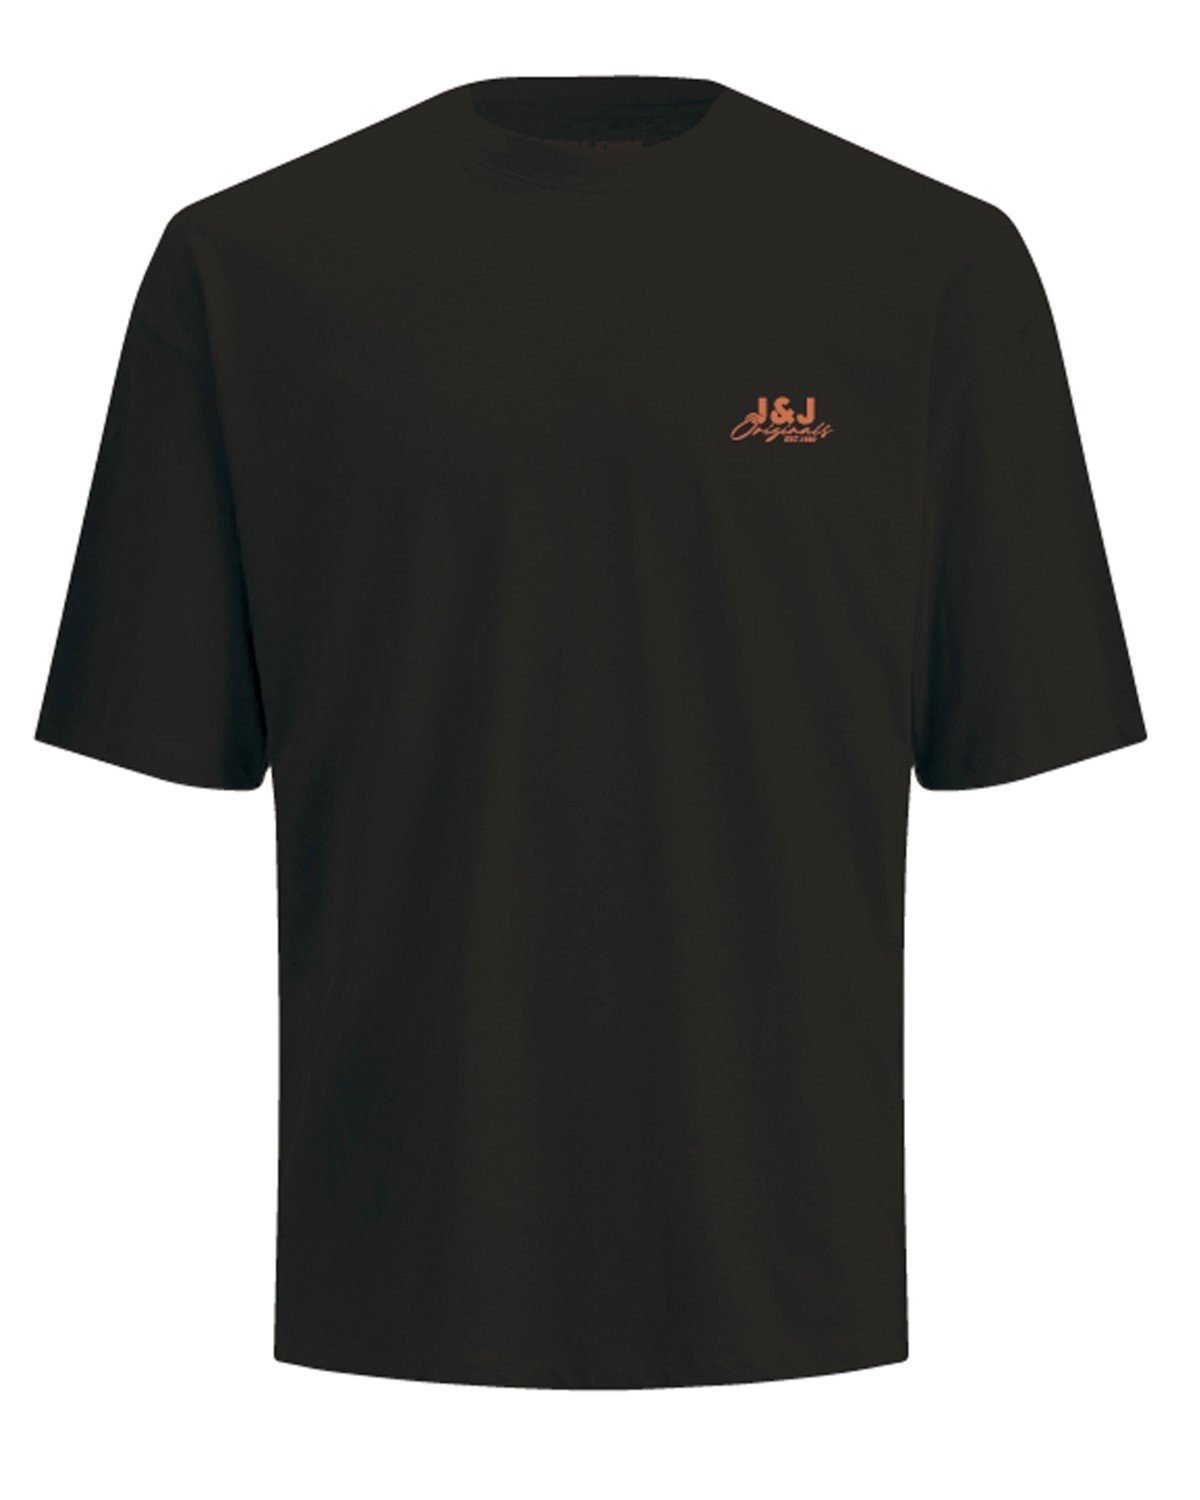 TEE ELEMENT Shirt Jones & T-Shirt NECK Jack CREW JORBRINK schwarz SS T-Shirt